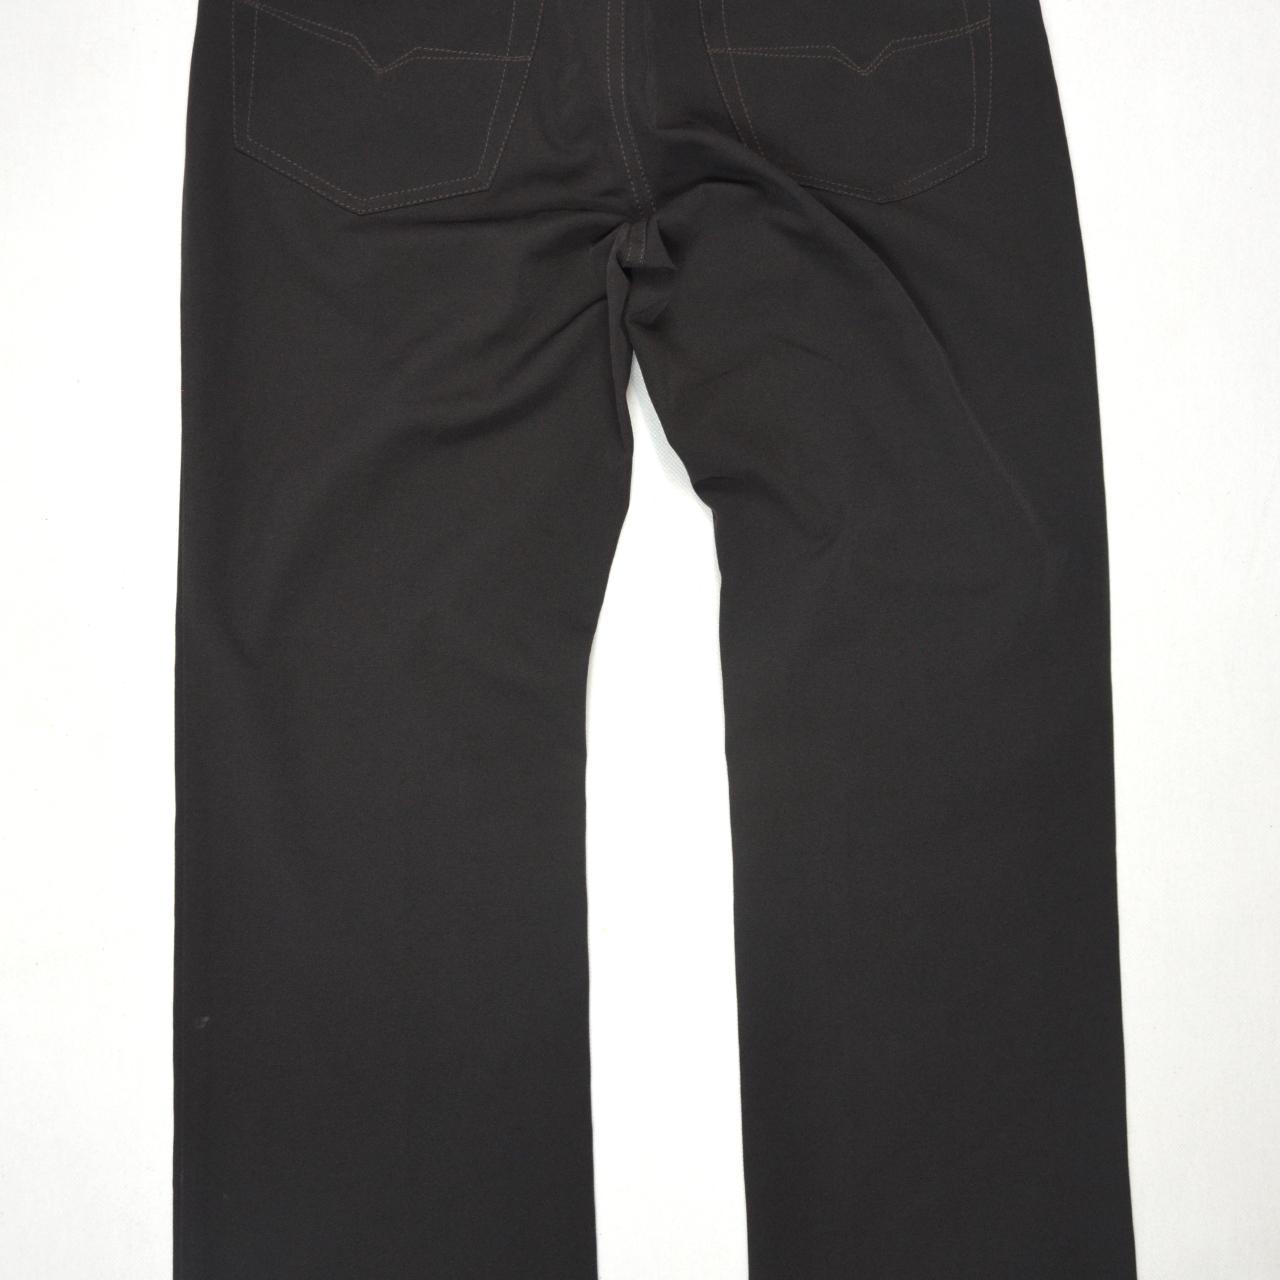 Versace Jeans Couture pants size 32 /80CM WAIST - Depop